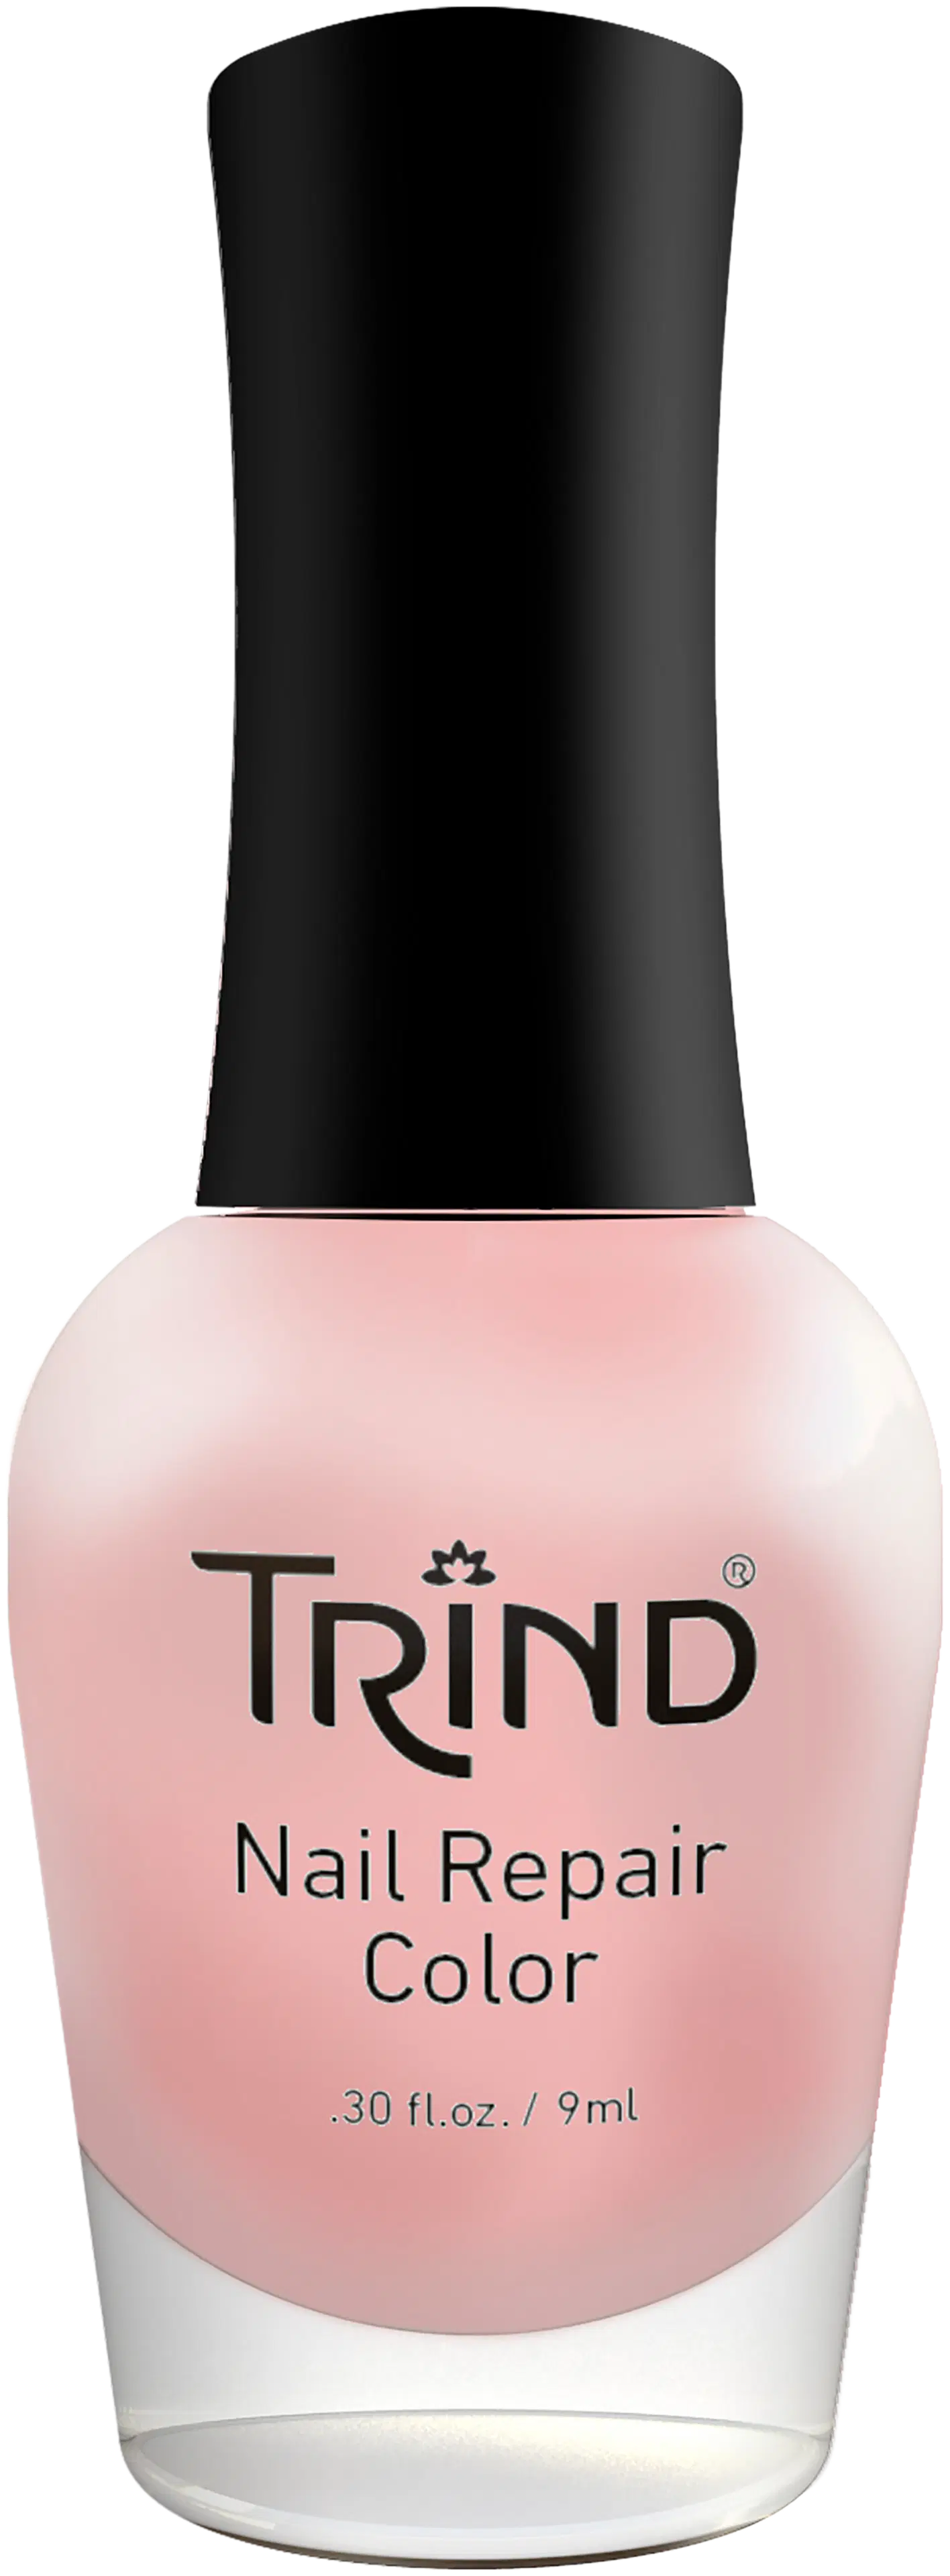 Trind Nail Repair Color Pink pearl 9ml